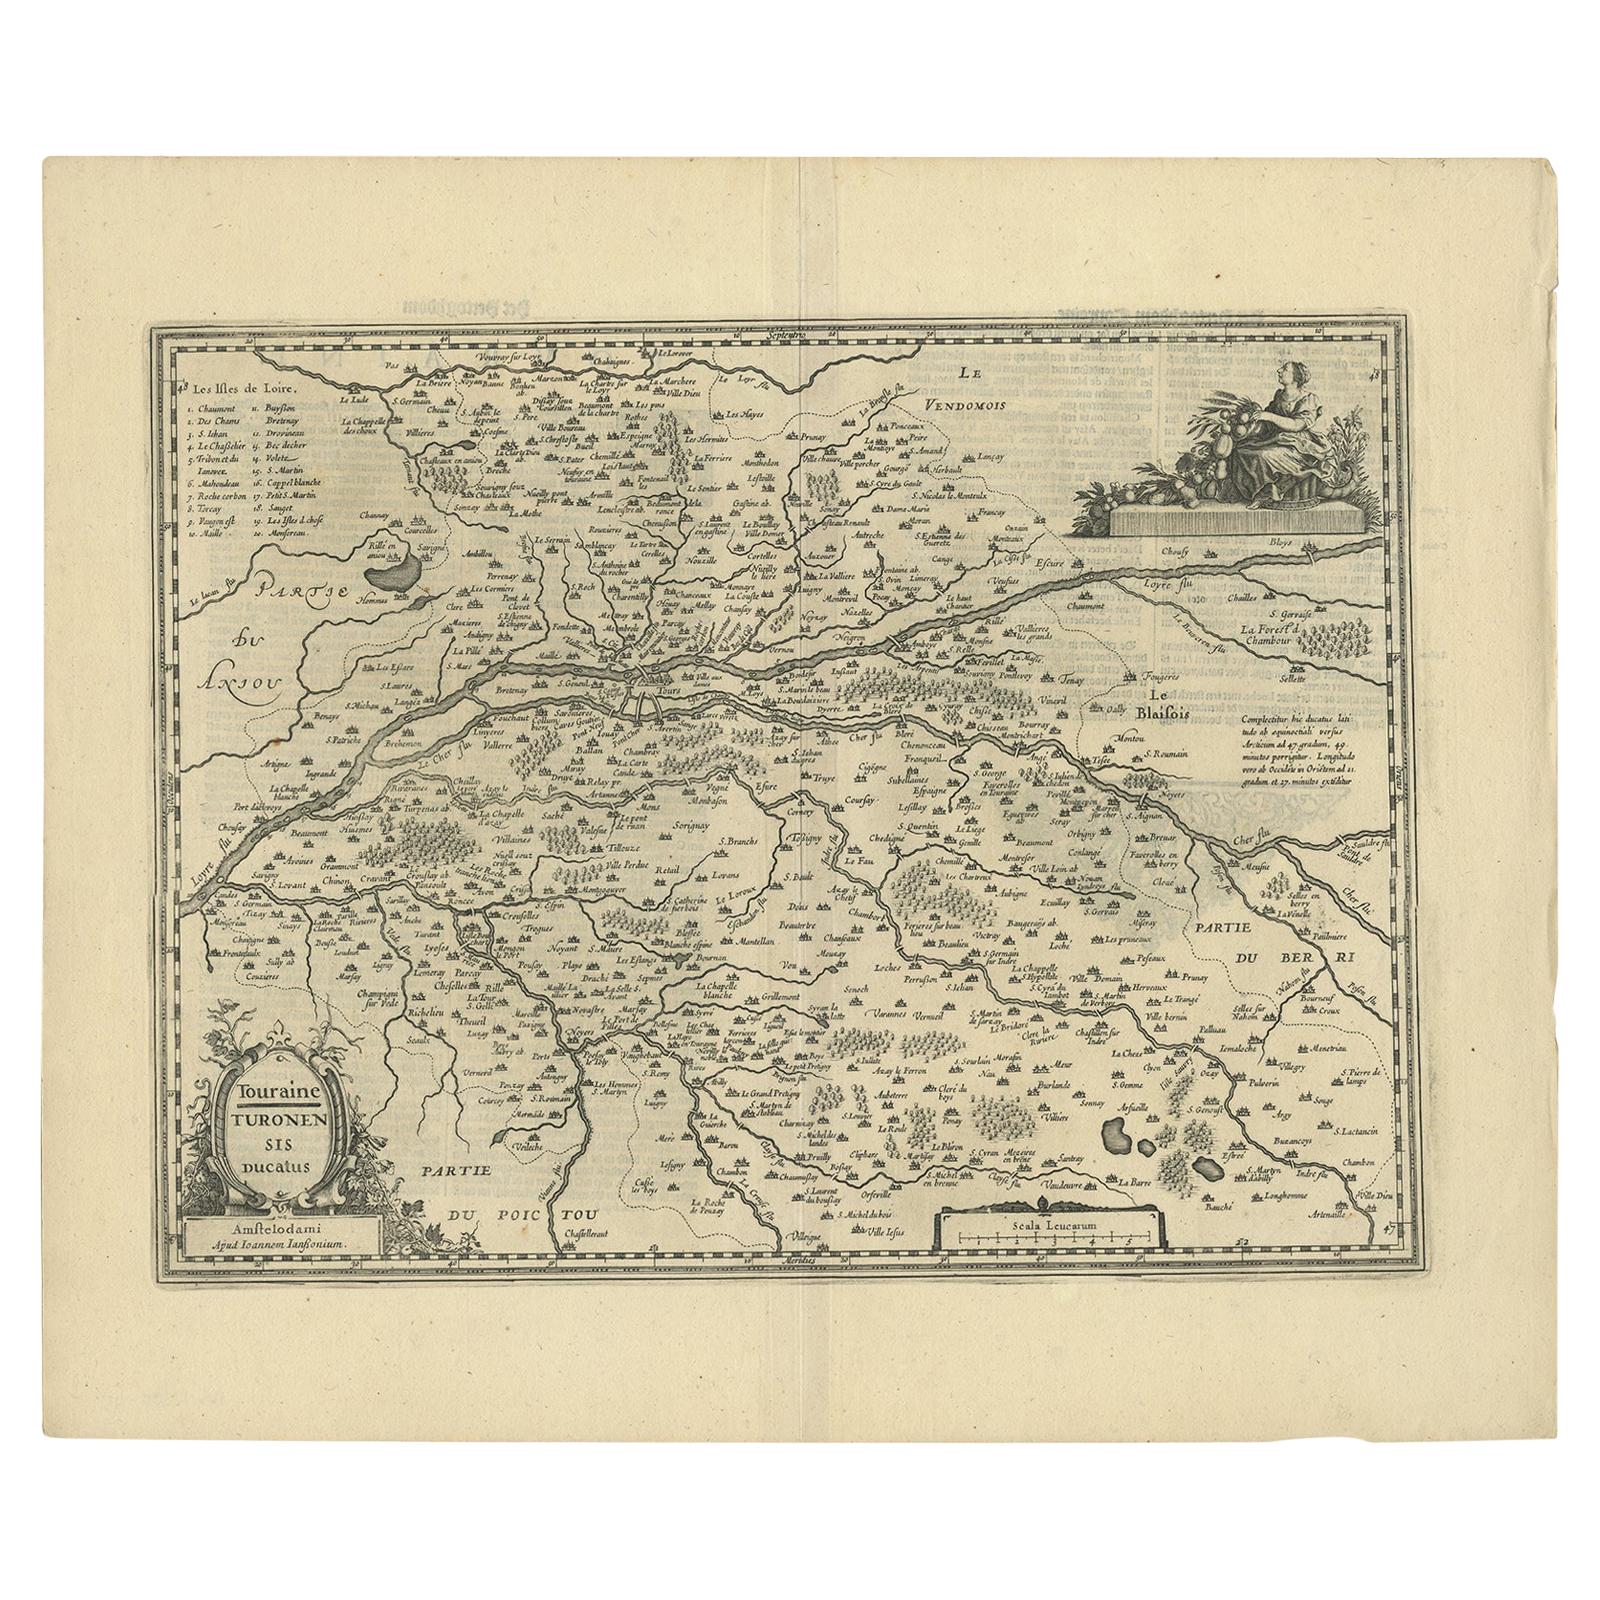 Antique Map of the Region of Touraine by Janssonius 'circa 1650'